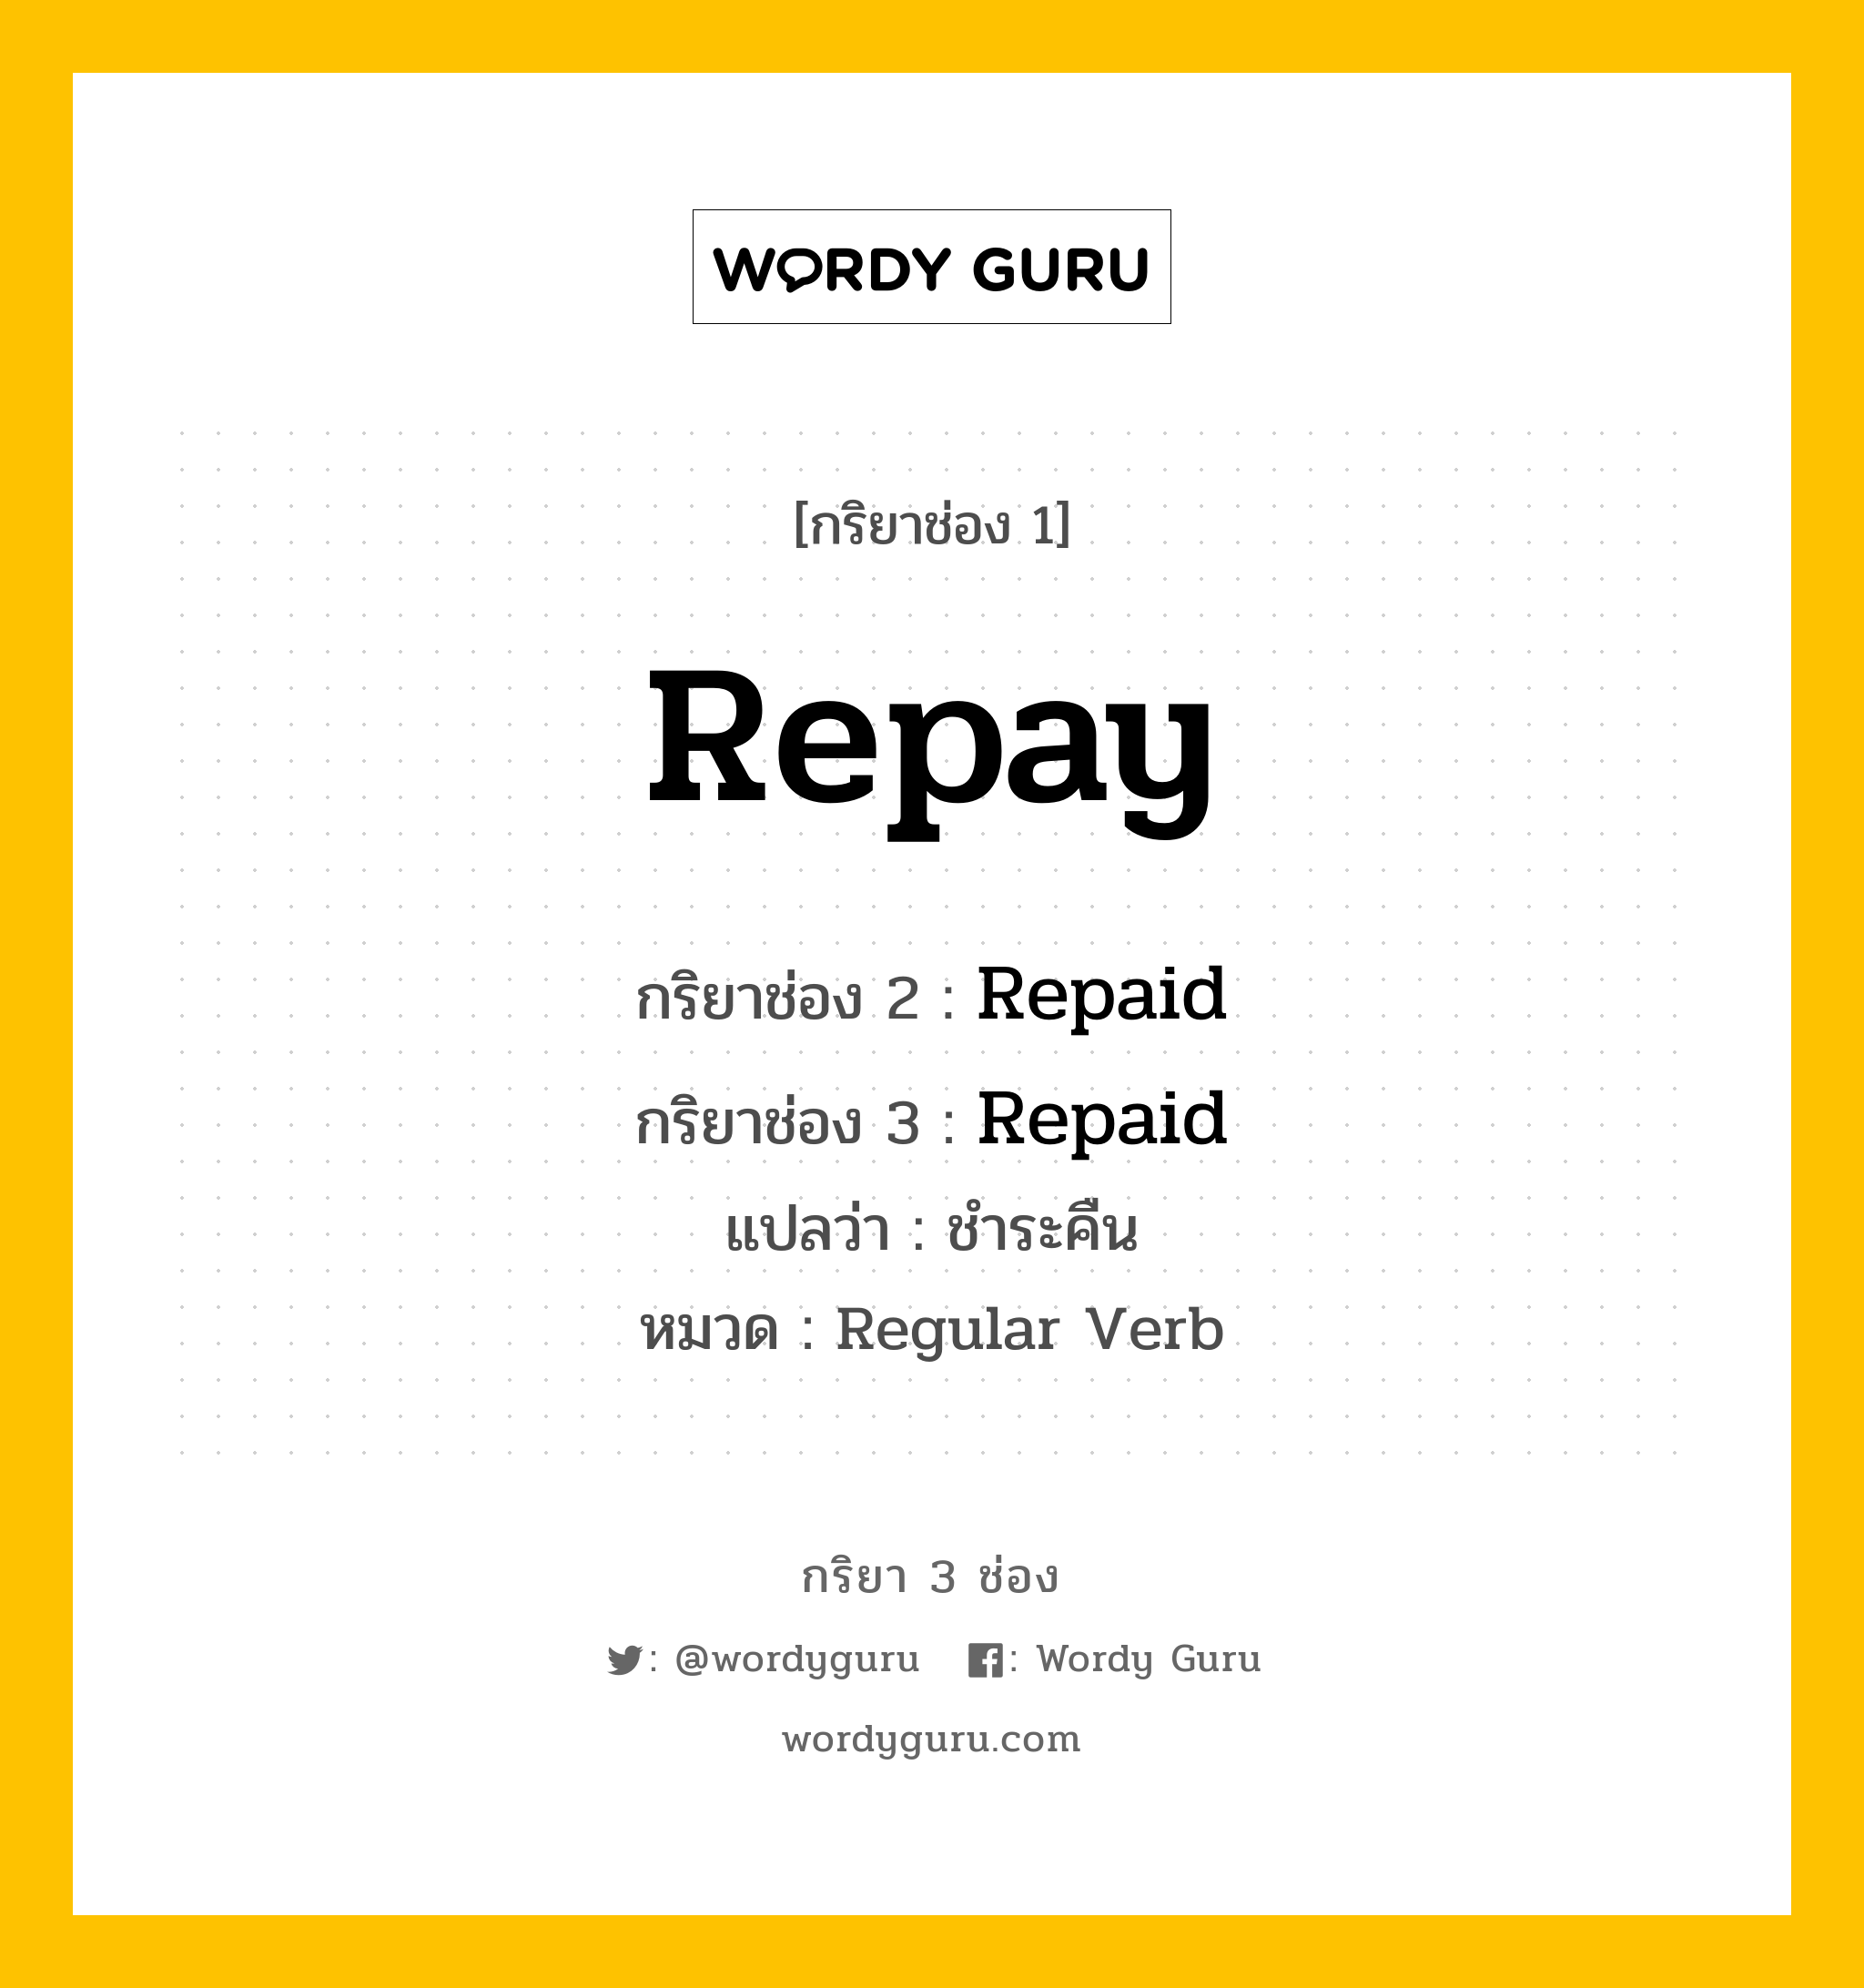 กริยา 3 ช่อง ของ Repay คืออะไร? มาดูคำอ่าน คำแปลกันเลย, กริยาช่อง 1 Repay กริยาช่อง 2 Repaid กริยาช่อง 3 Repaid แปลว่า ชำระคืน หมวด Regular Verb หมวด Regular Verb